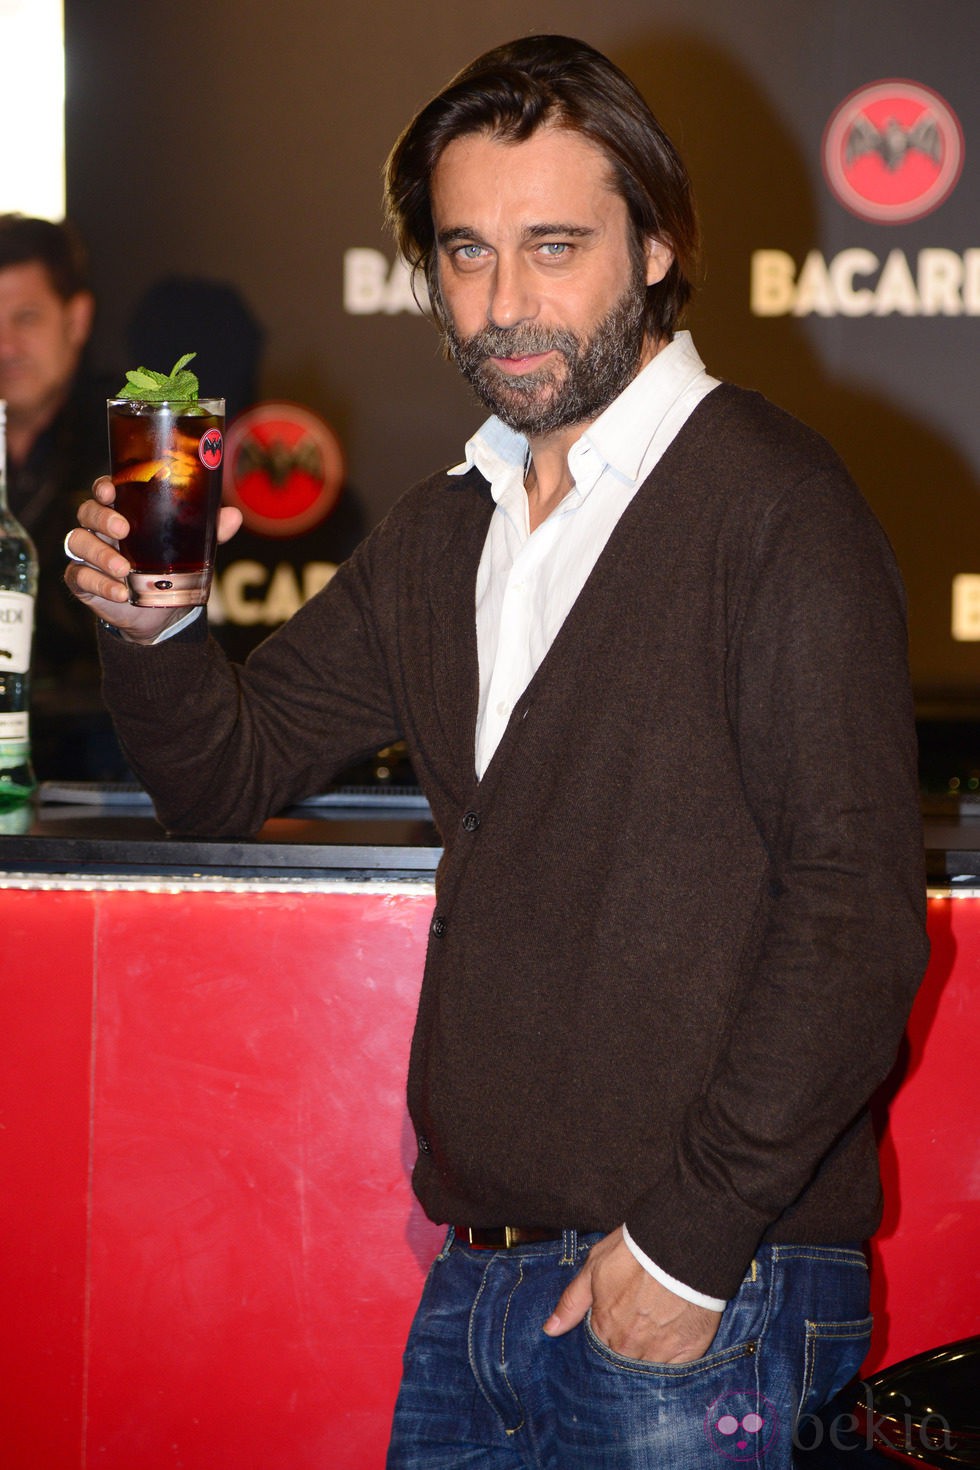 Jordi Mollà en un acto publicitario de Bacardí en Barcelona